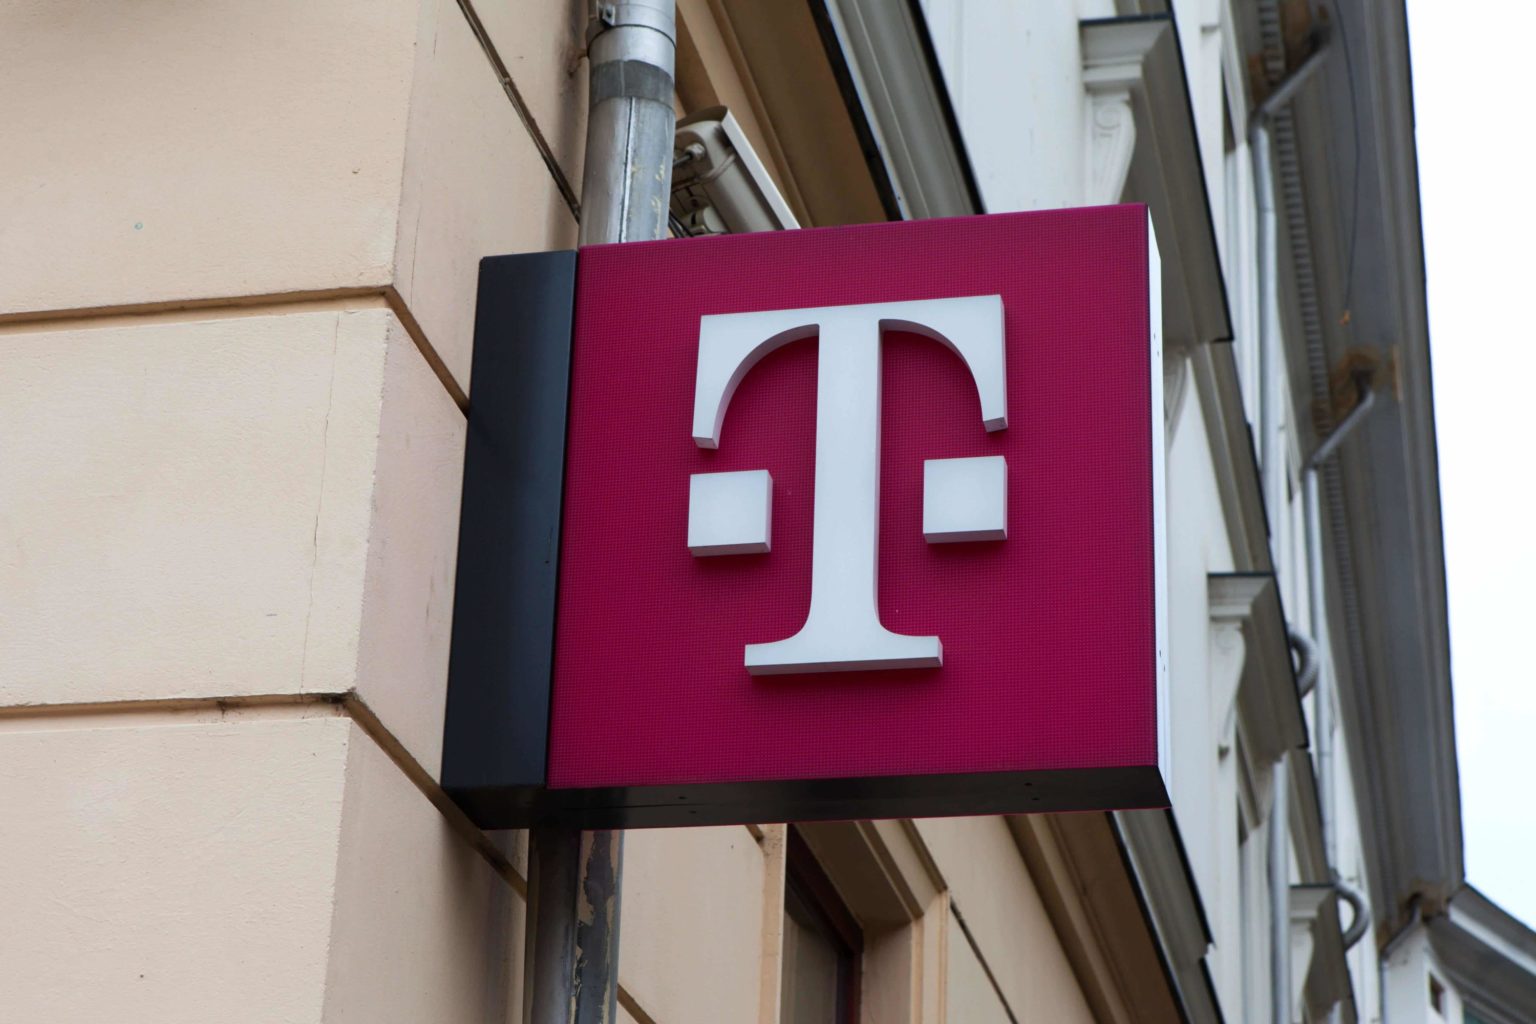 L'association des consommateurs de NRW poursuit Telekom, Telefónica et Vodafone